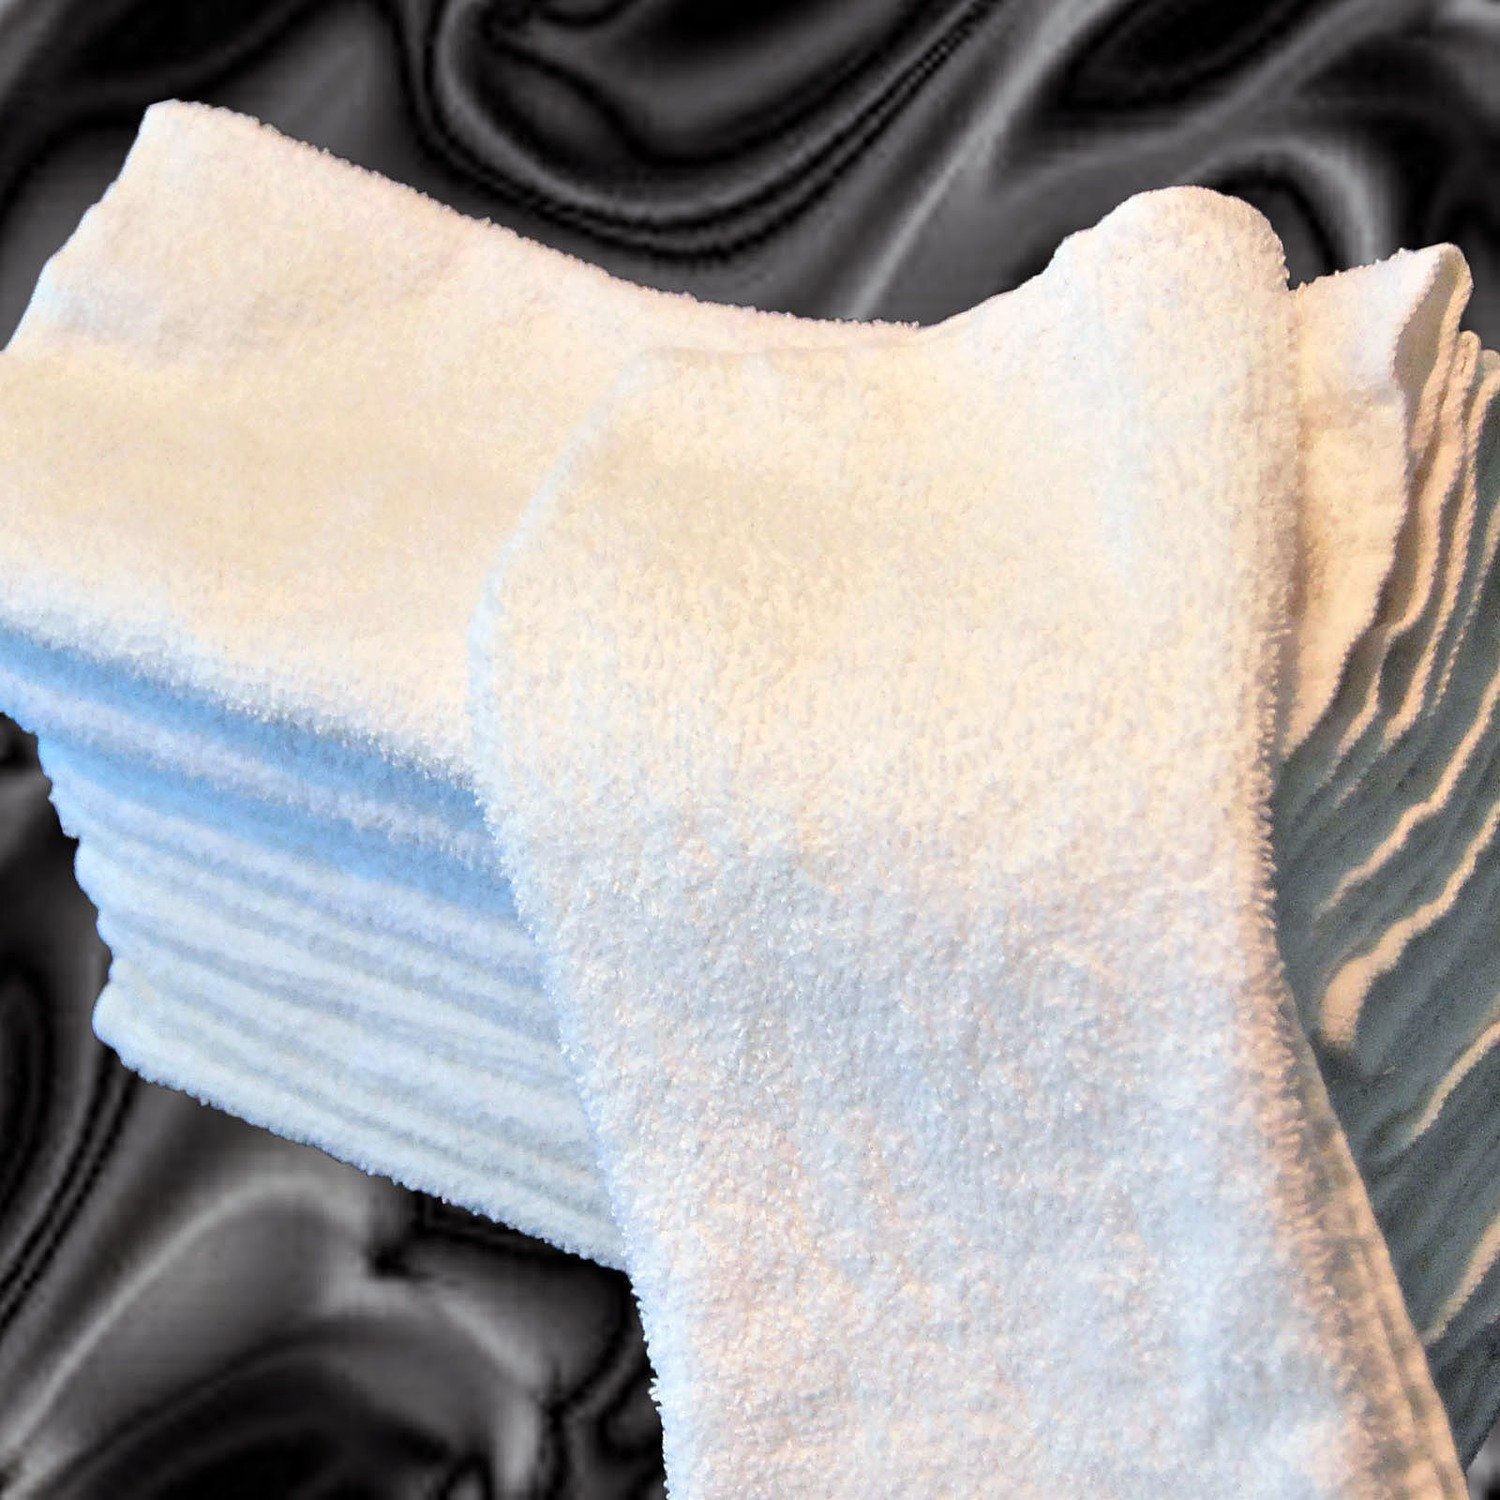 1 Doz. White Terry Hand Towels 100% Cotton/ 16 X 27 / 3 lb. per Doz.  Salon, Gym Towels